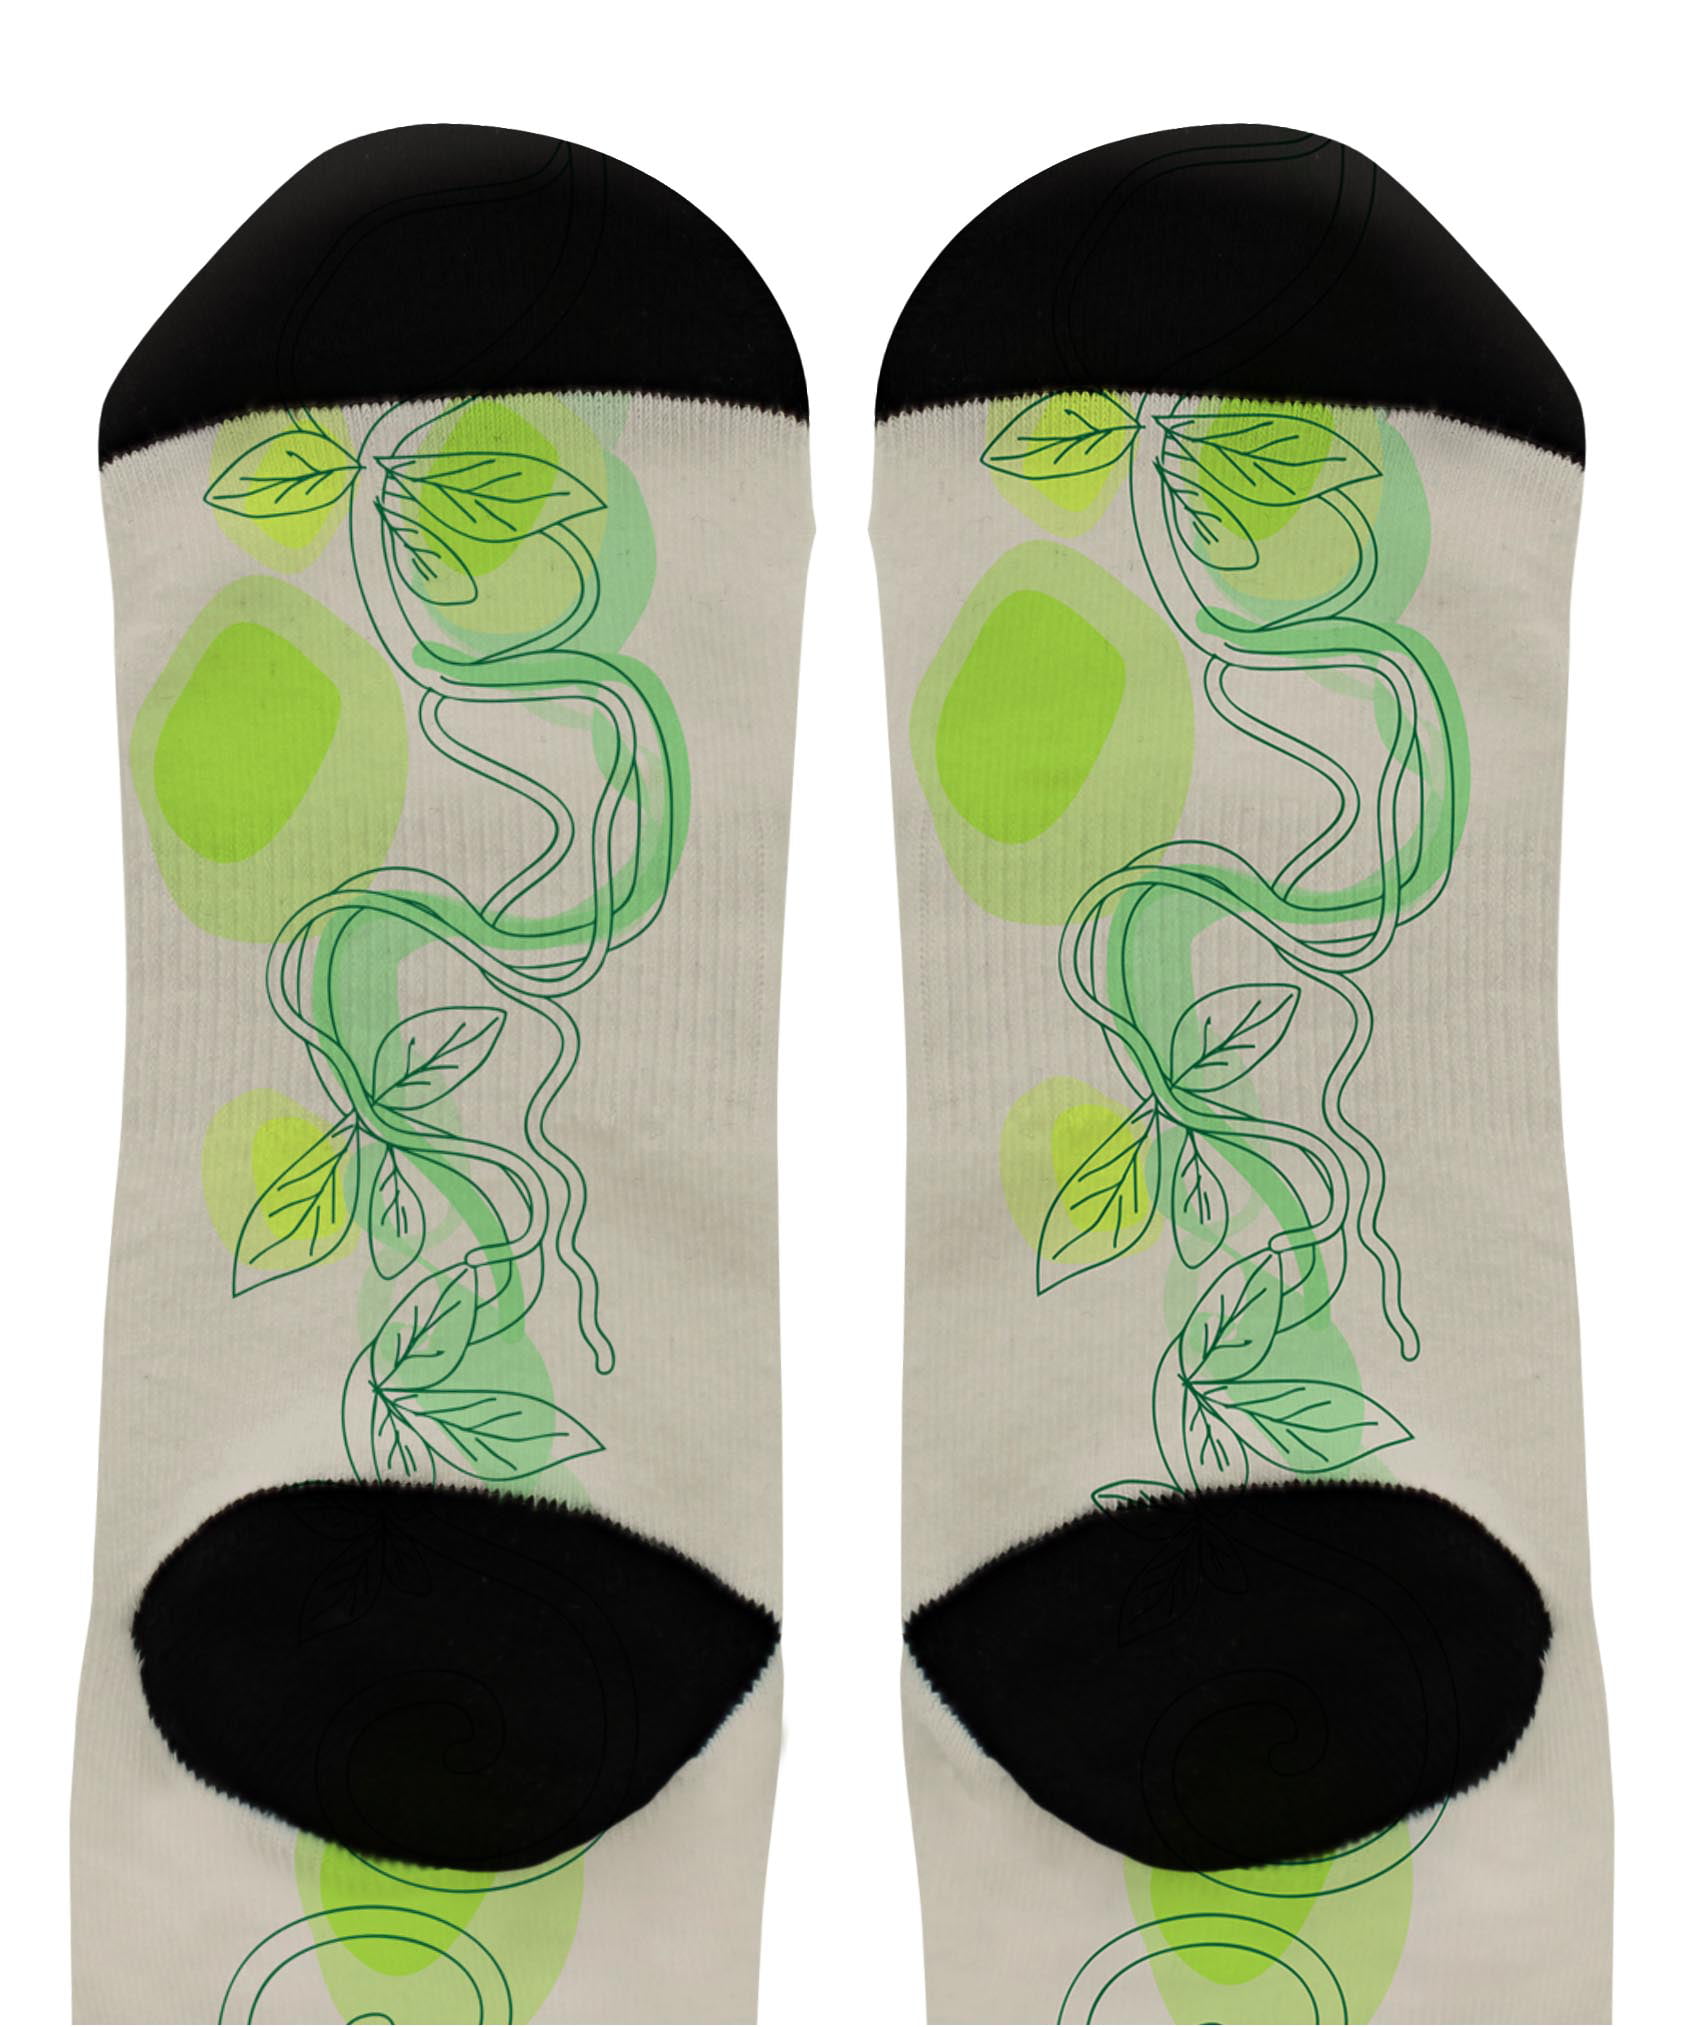 Asparagus Garden Socks Socks Food Gardening Gifts Colorful Socks Garden Cute Socks Asparagus Socks Socks Gift Vegetable Funny Socks